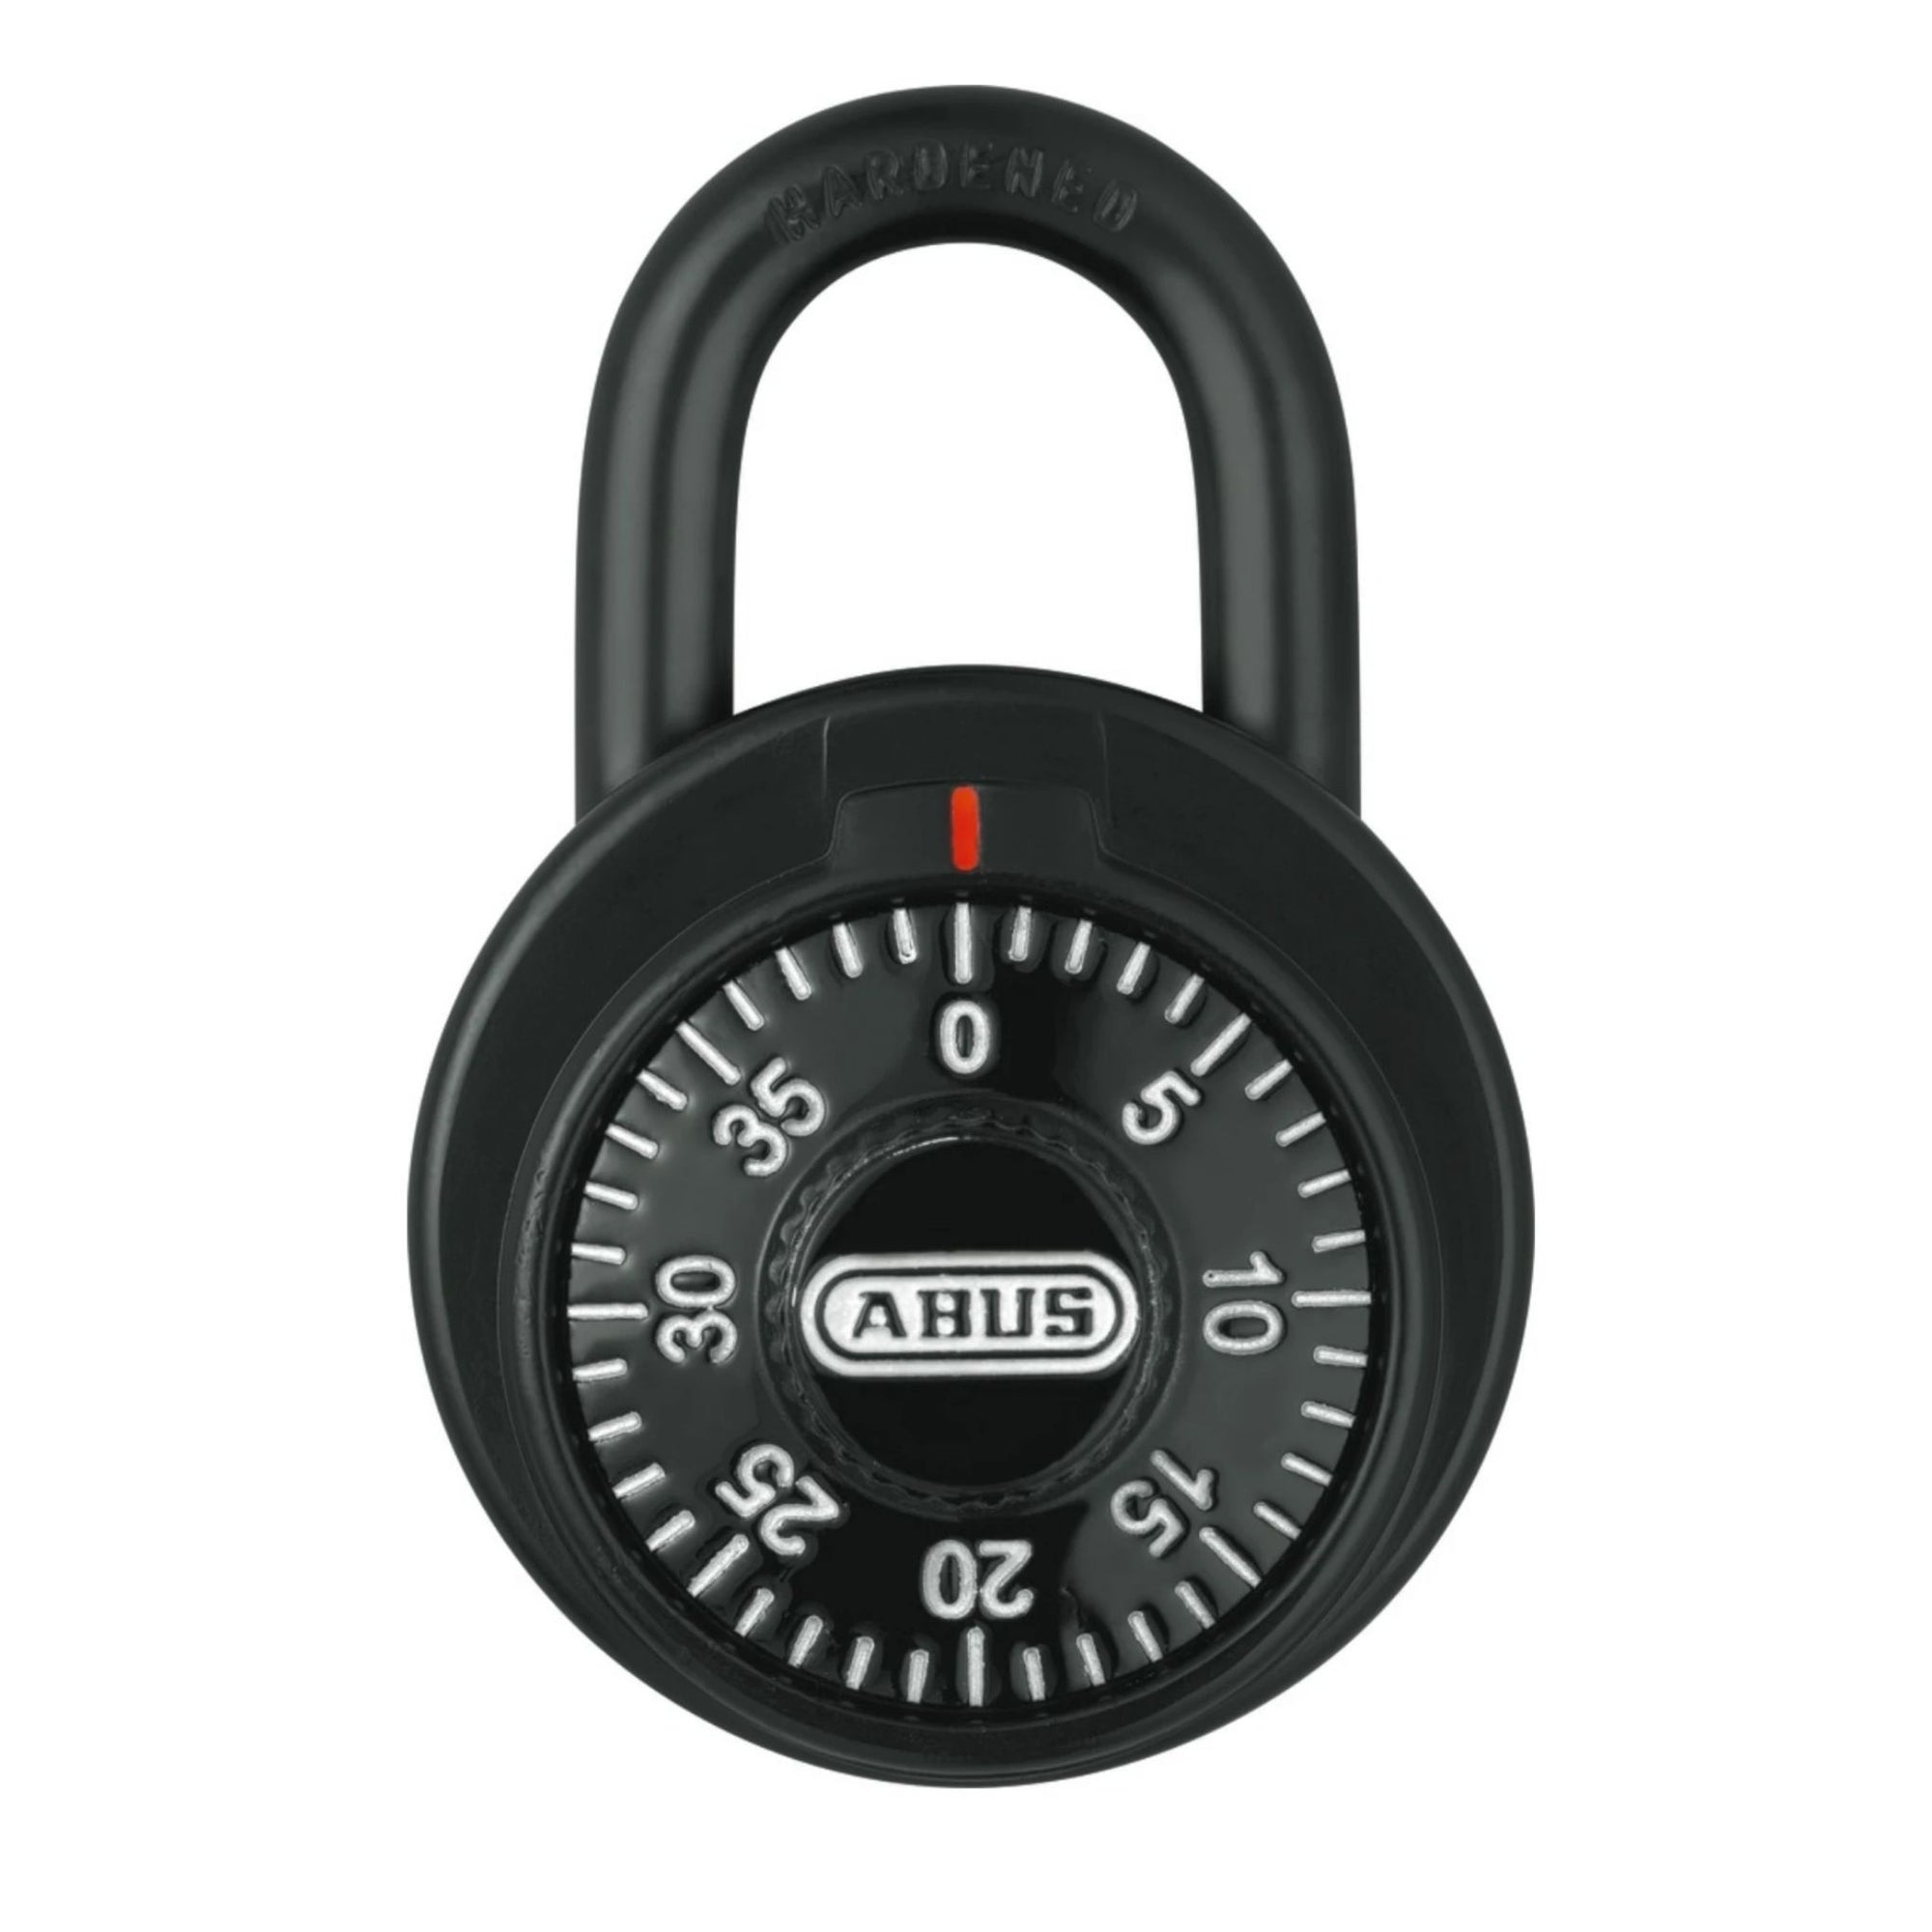 Abus 78/50 KC KA 503A Black Locker Padlock with Key Control Matched to Key Number KA503A - The Lock Source